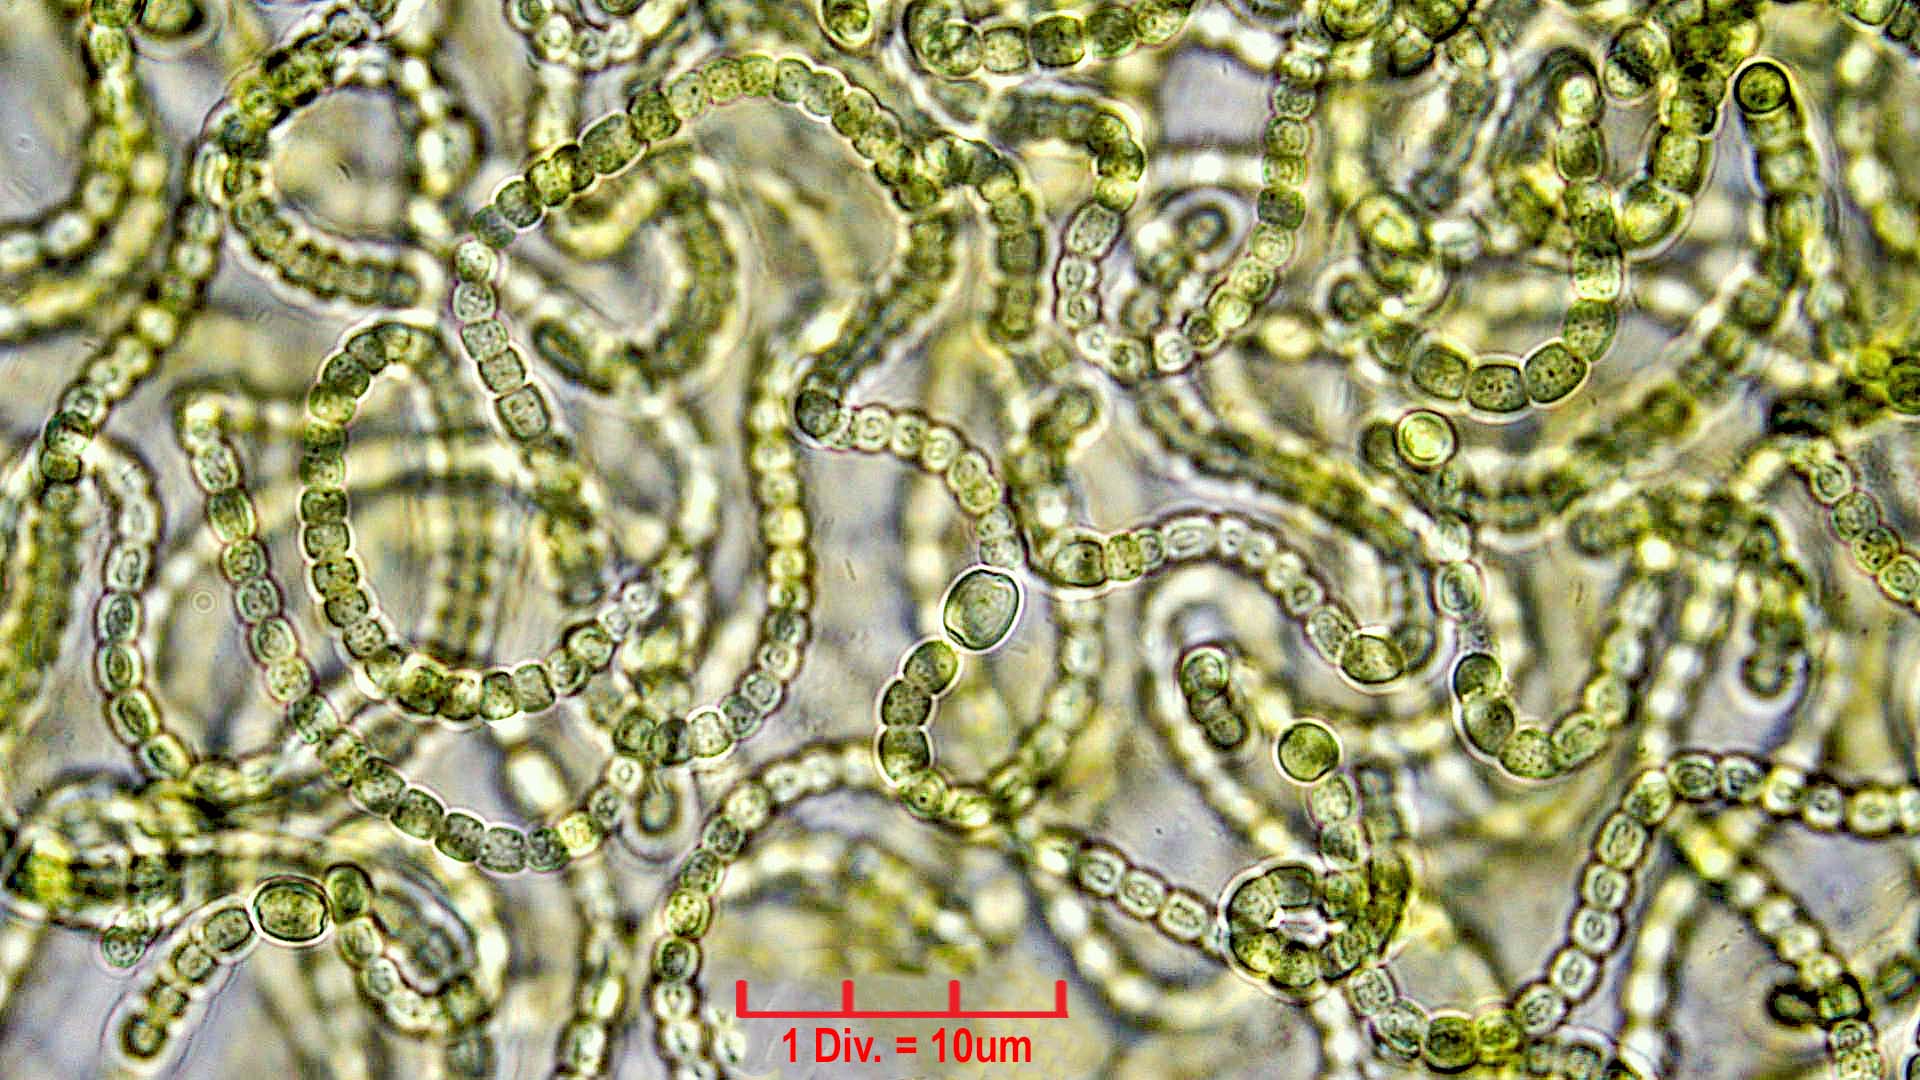 ./././Cyanobacteria/Nostocales/Nostocaceae/Nostoc/verrucosum/nostoc-verrucosum-610.jpg